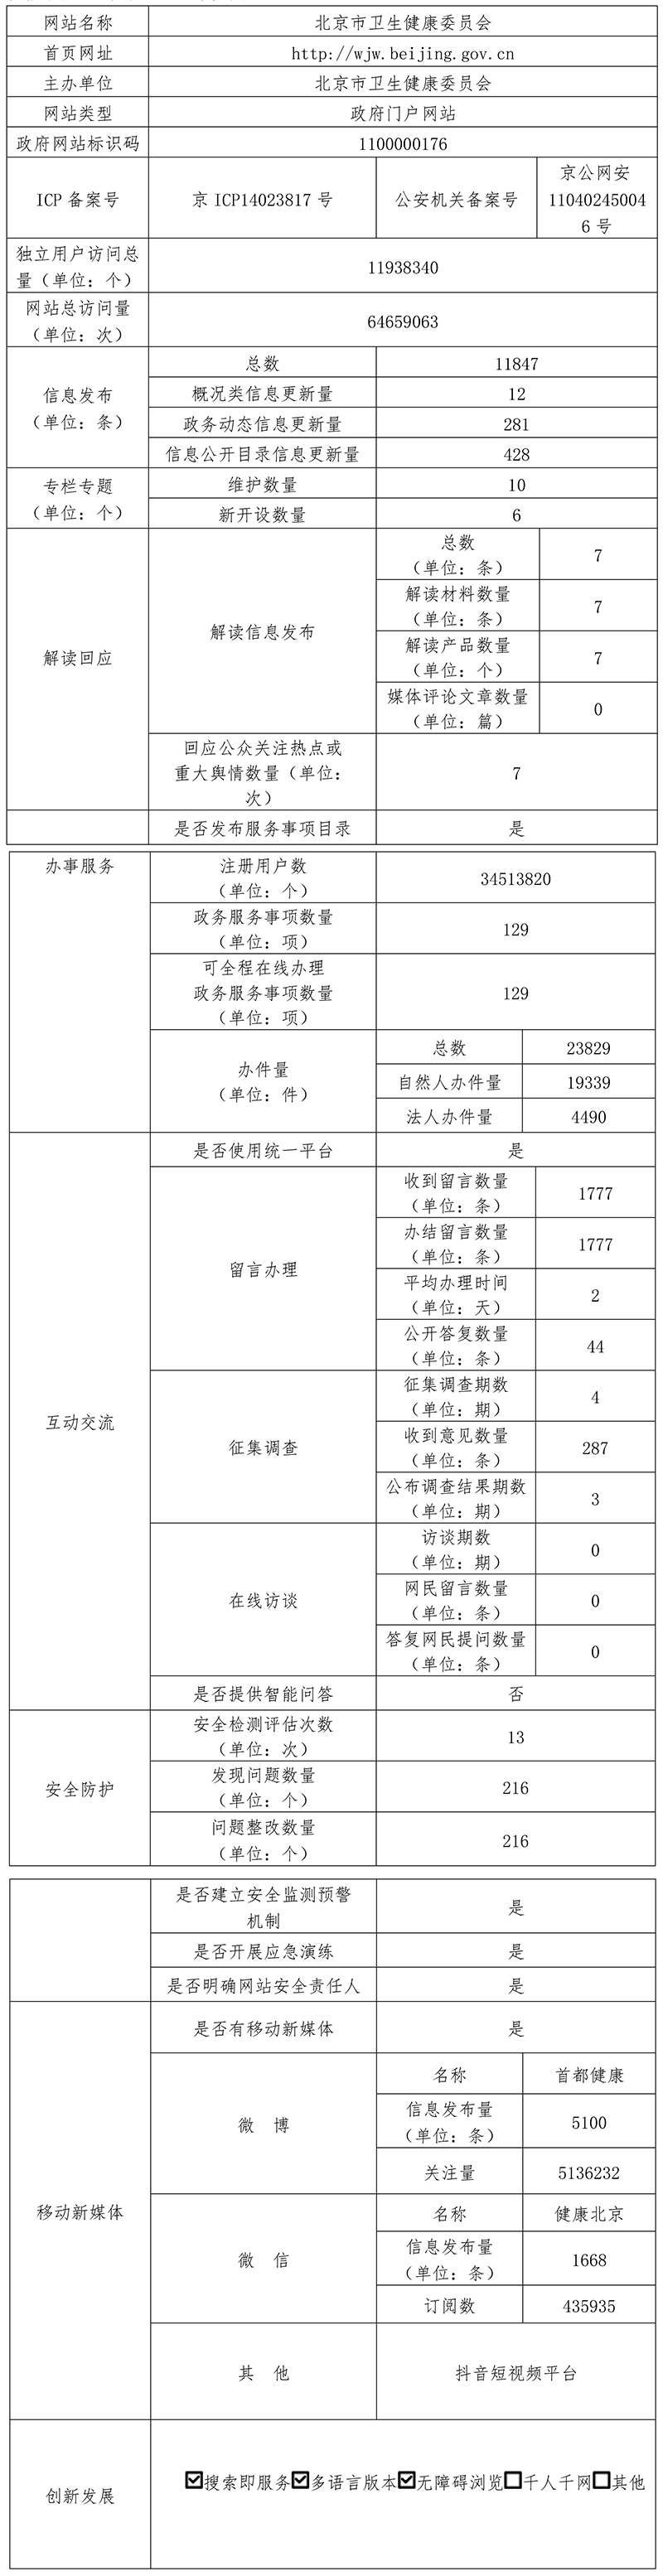 北京市衛生健康委員會2021年政府網站年度工作報表